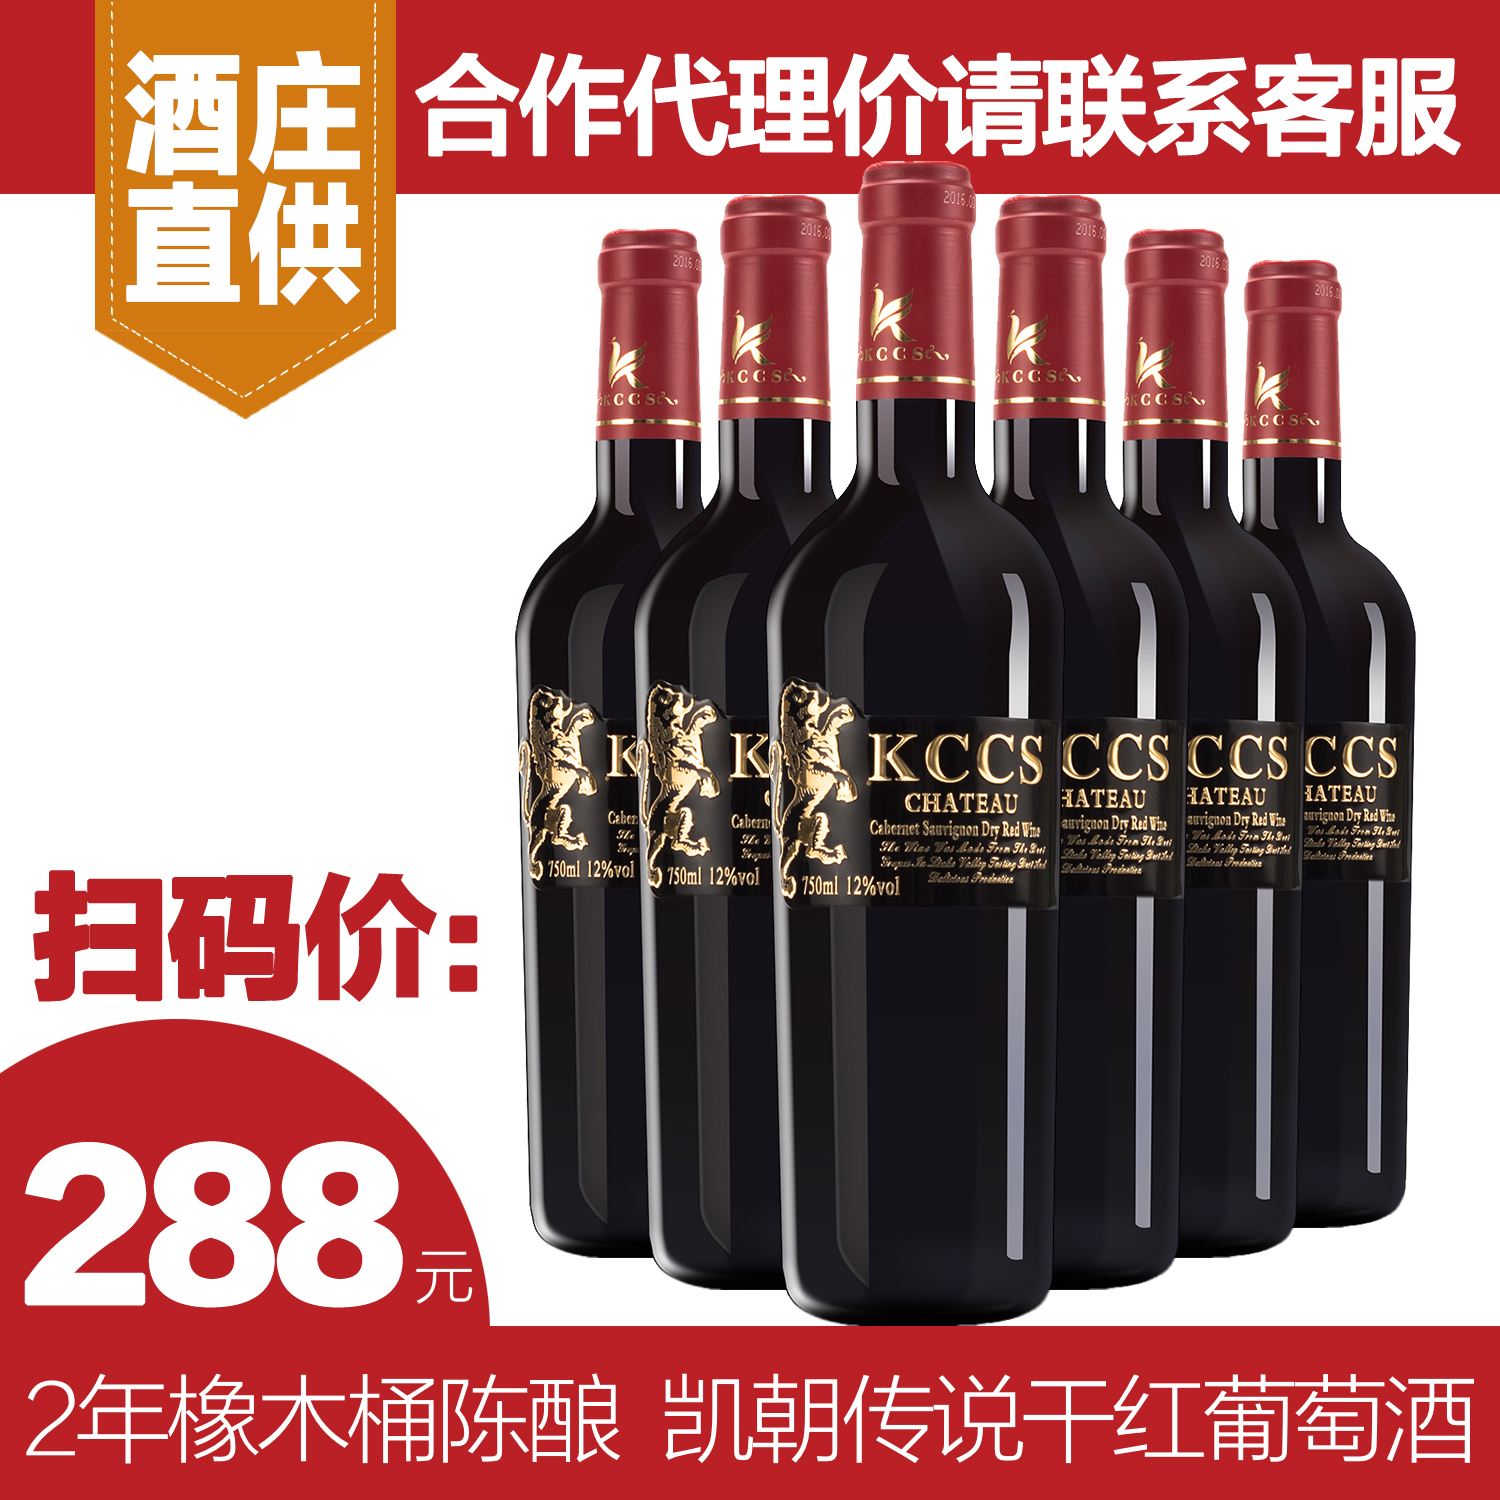 广州红酒批发 广州酒庄红酒直供  广州金属标红酒 原瓶进口红酒图片